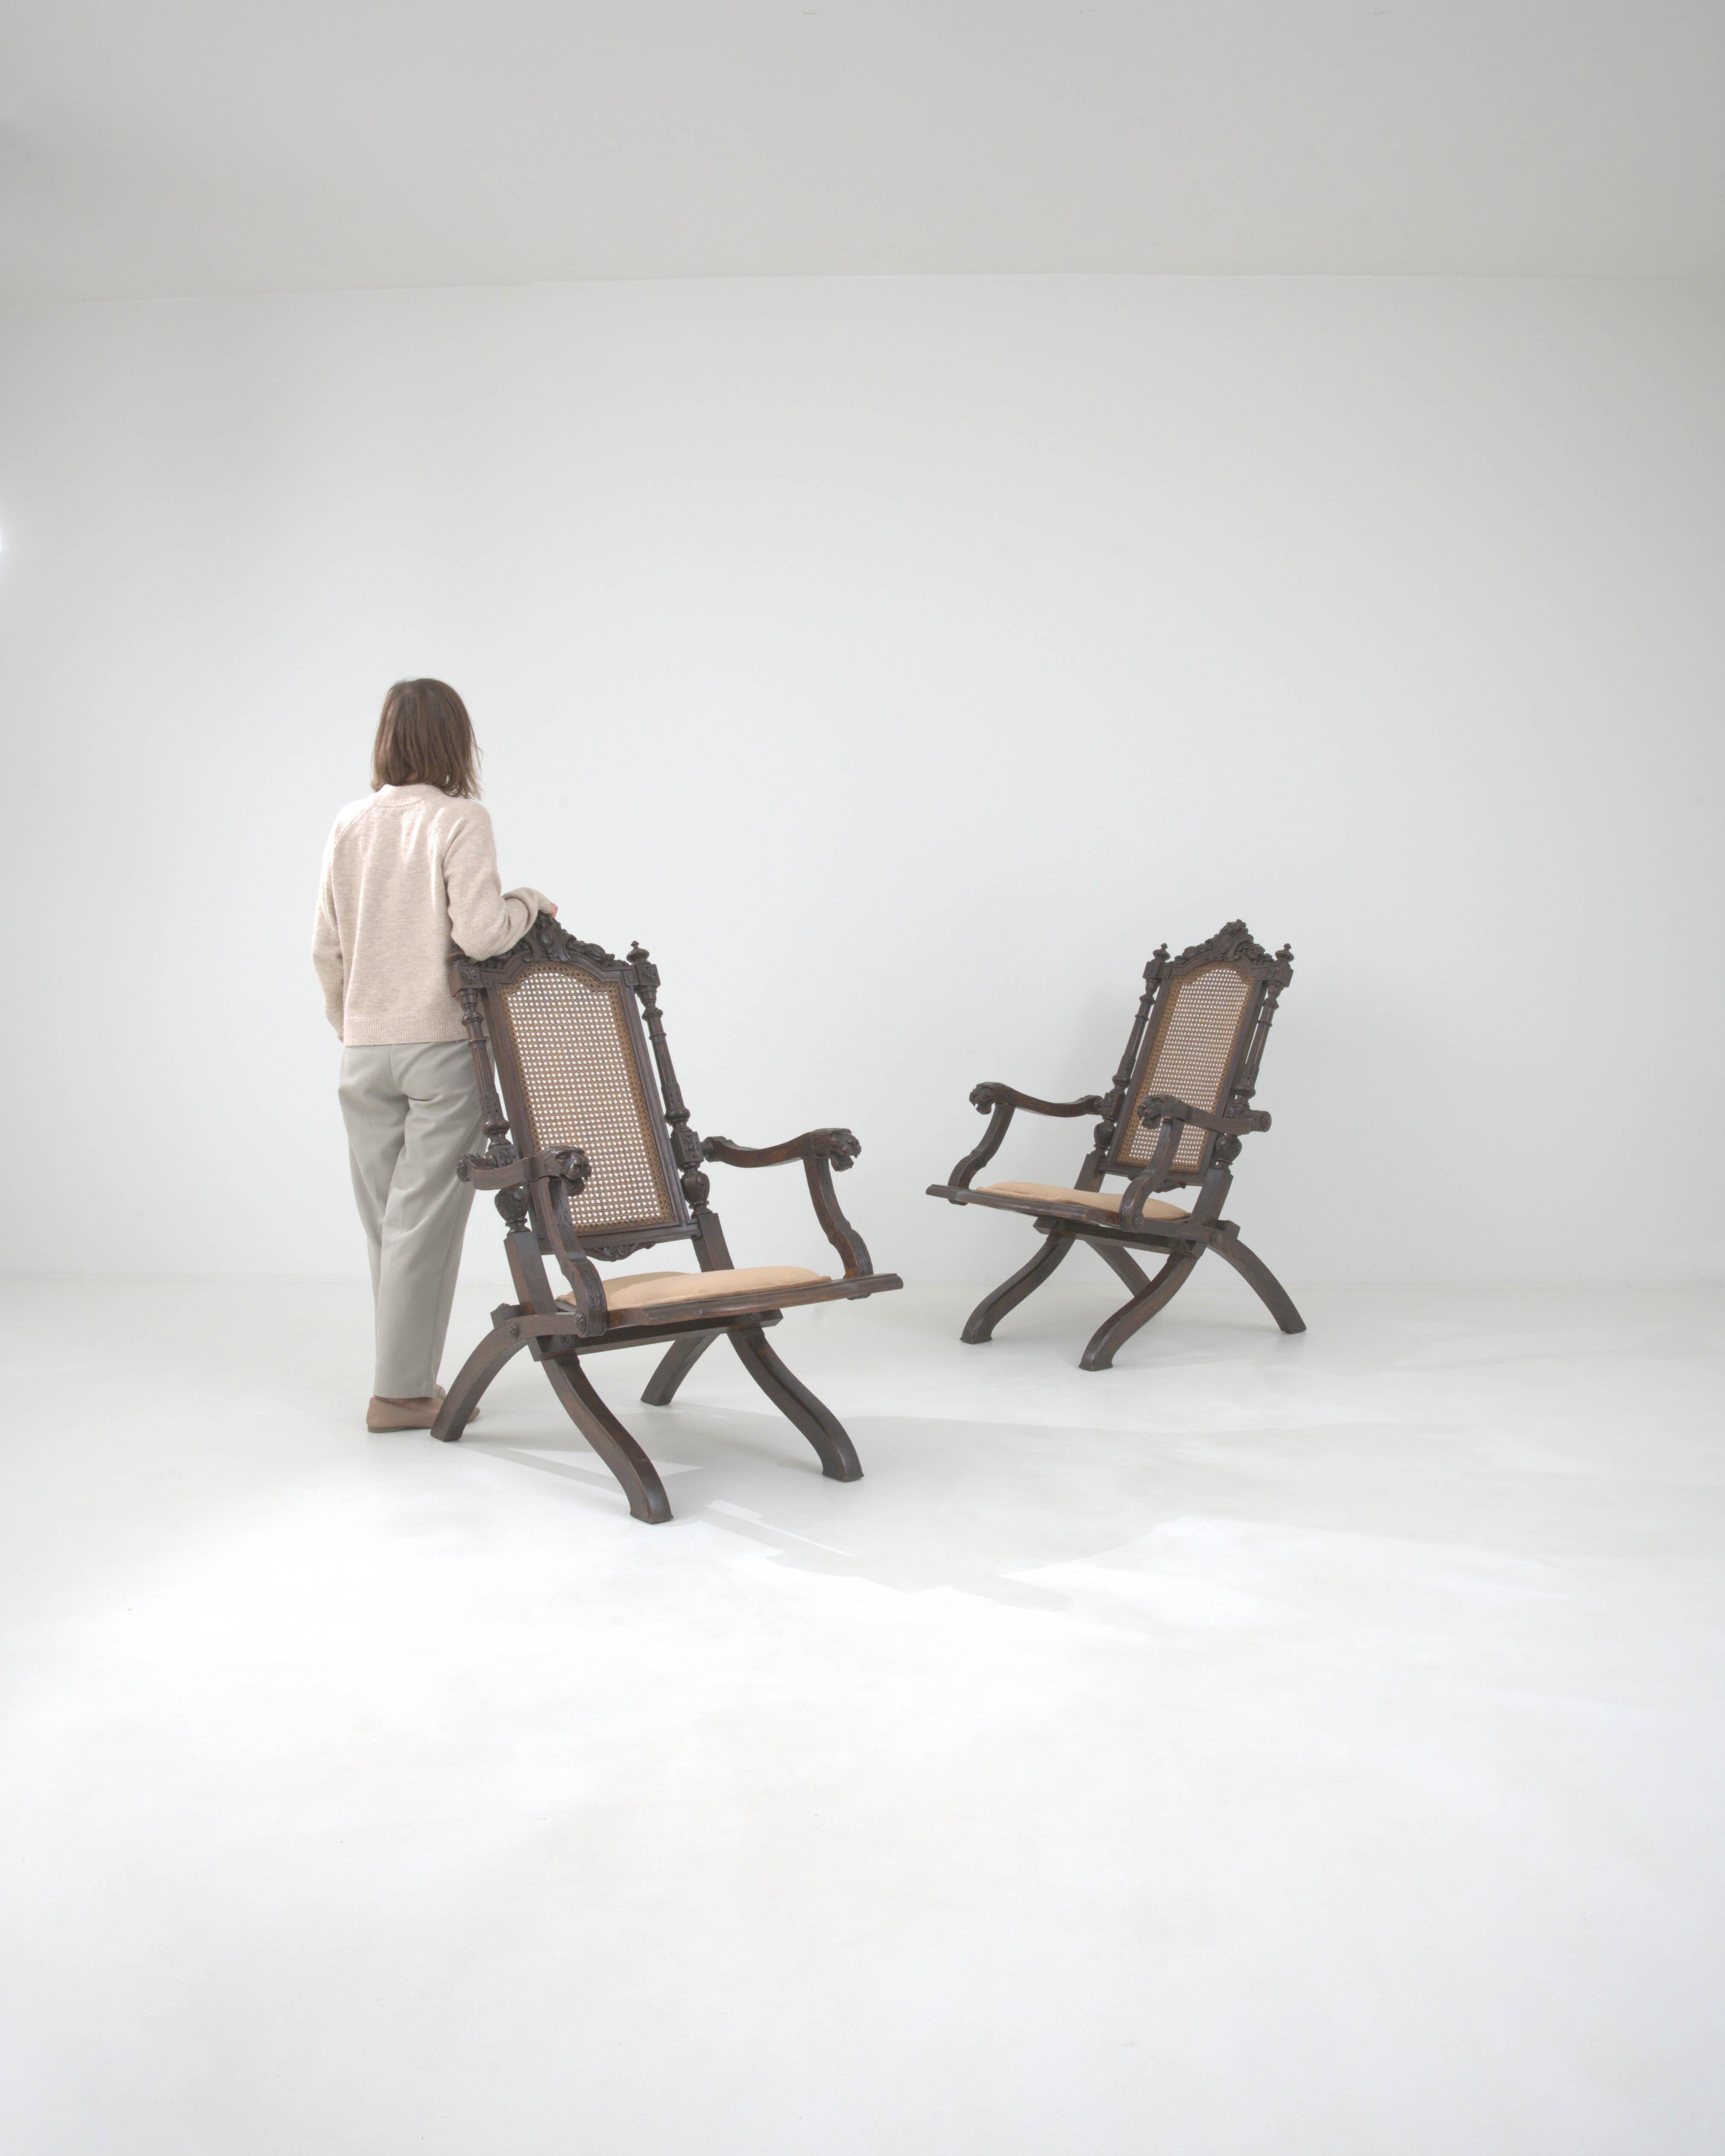 Replongez dans la grandeur des années 1900 avec cette exquise paire de fauteuils pliants en bois français. Ces chefs-d'œuvre sont dotés d'un charme royal, avec des sculptures ornées qui racontent l'histoire de l'art d'une époque révolue. Chaque